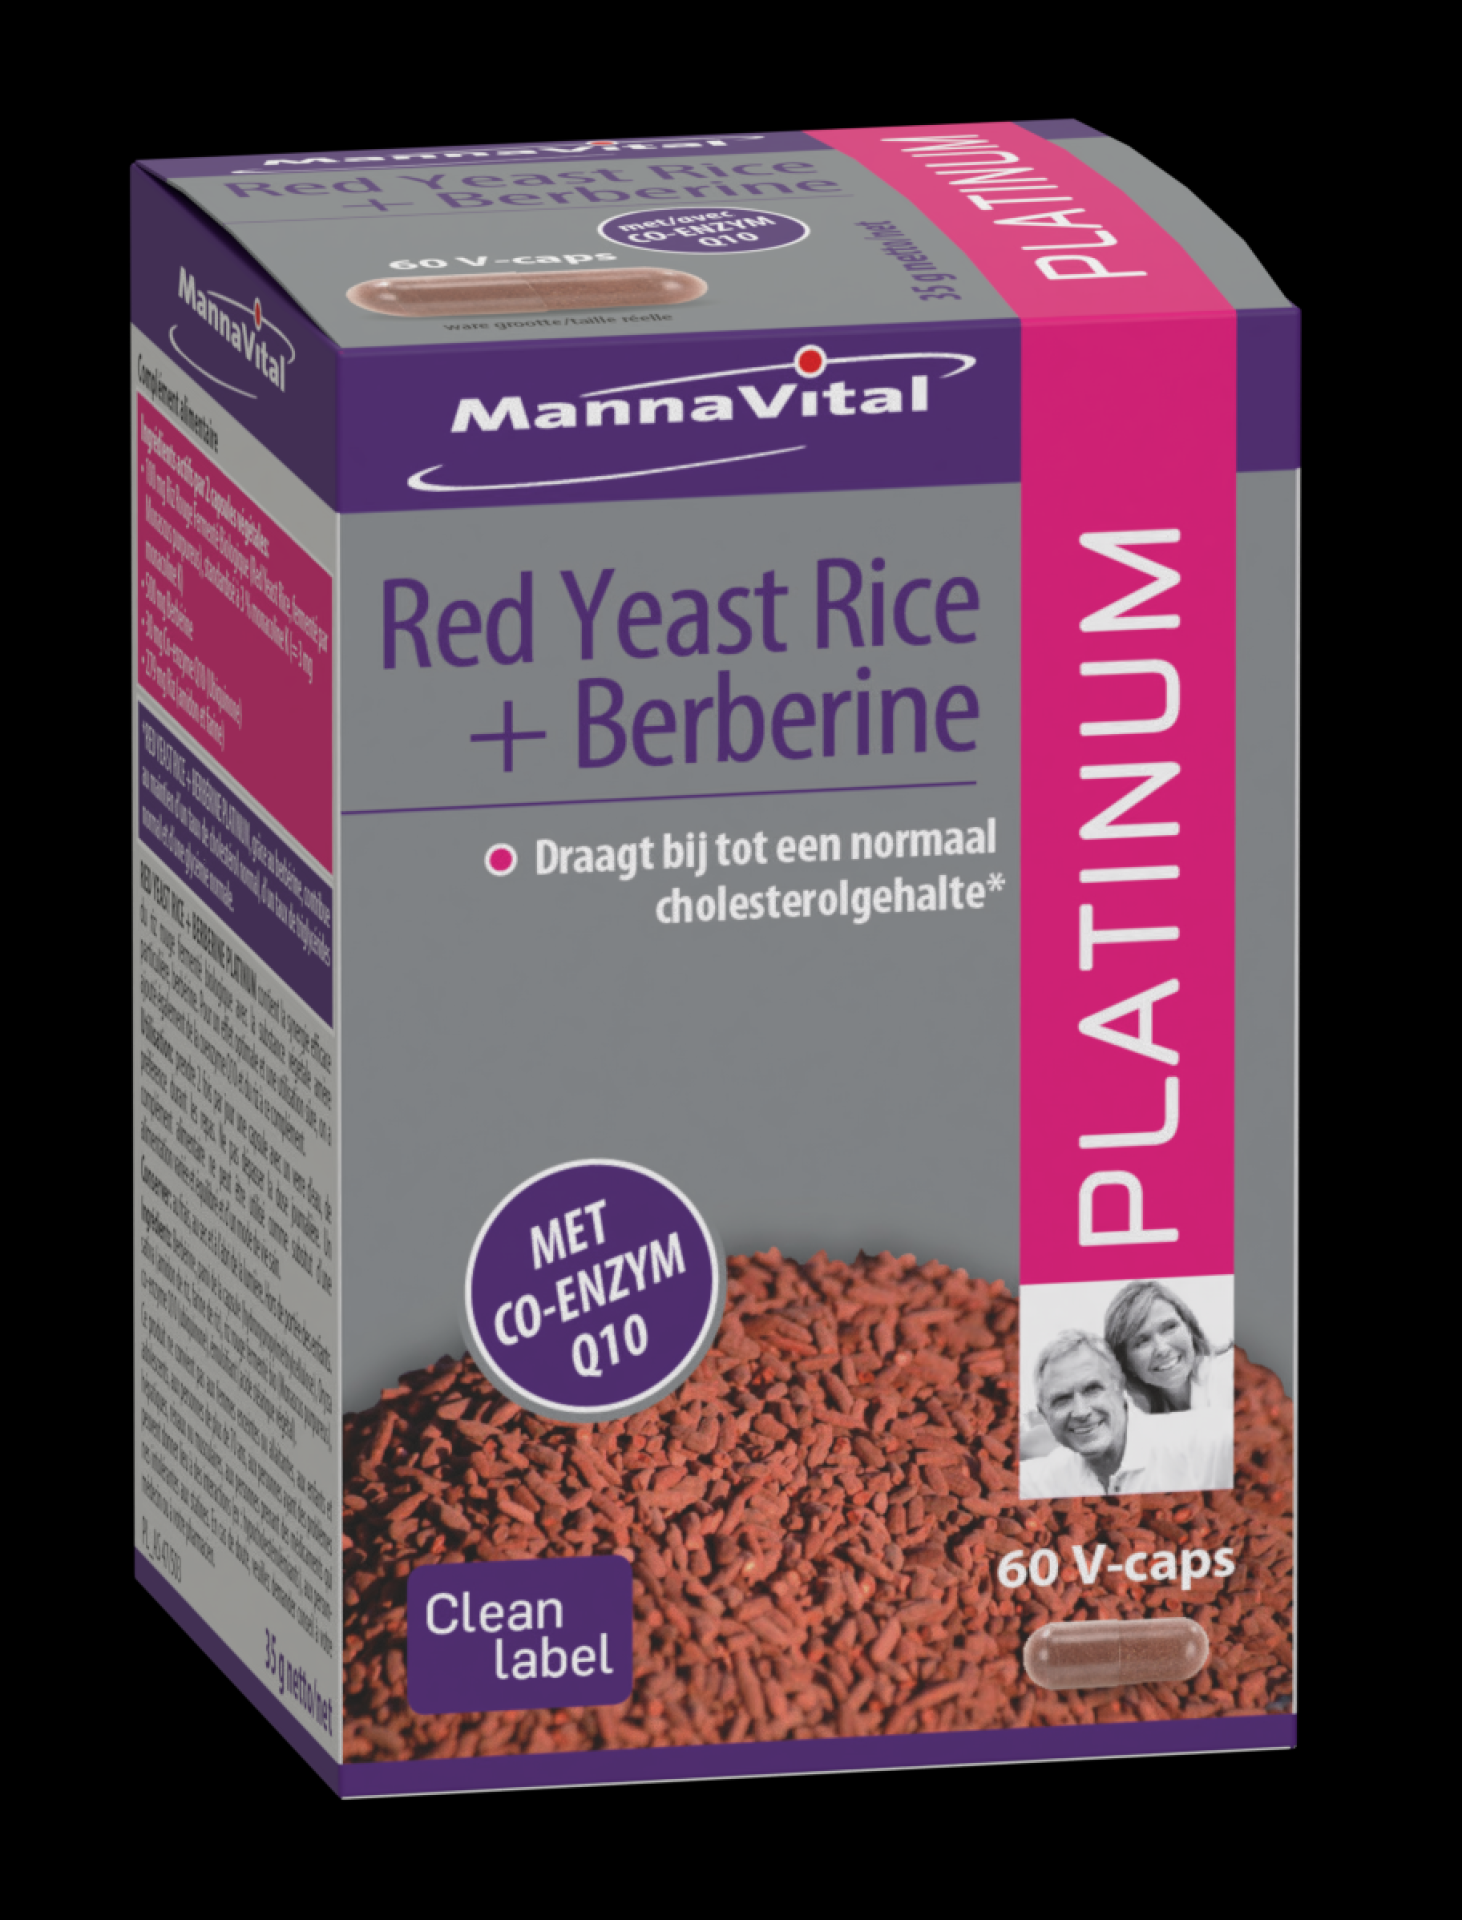 Red yeast rice + Berberine